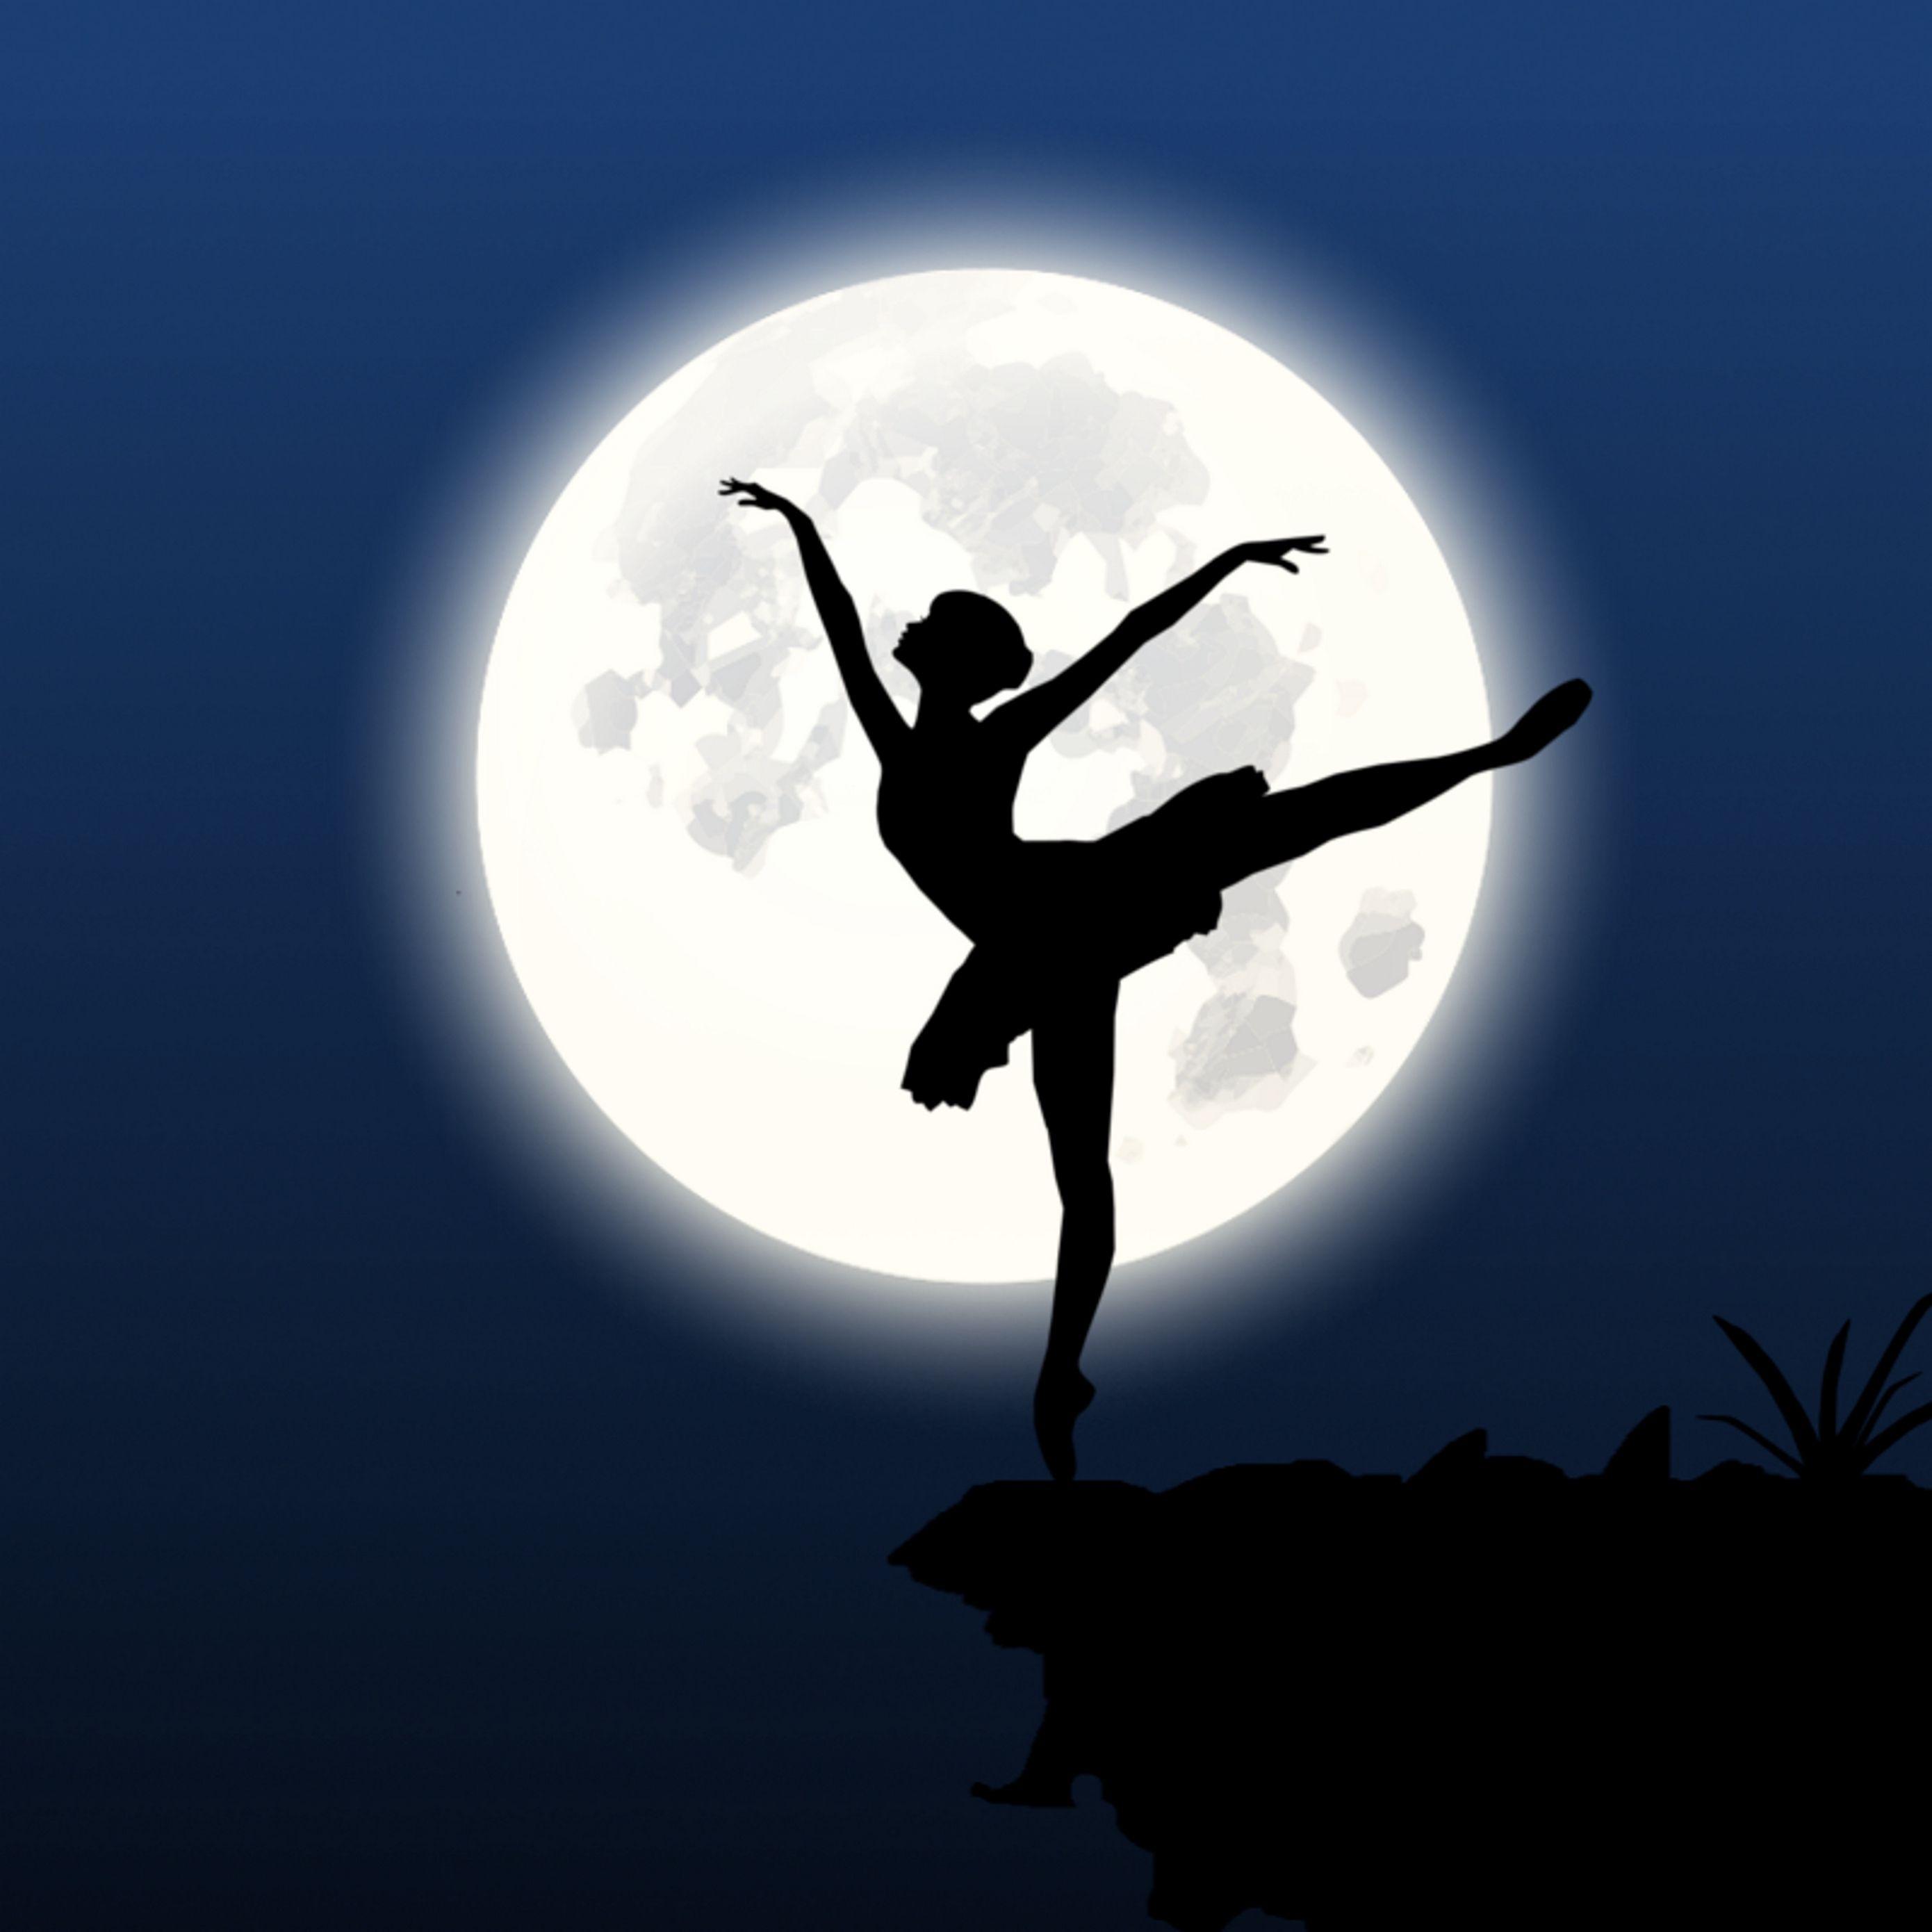 Download wallpaper 2780x2780 ballerina, silhouette, moon, dance ipad